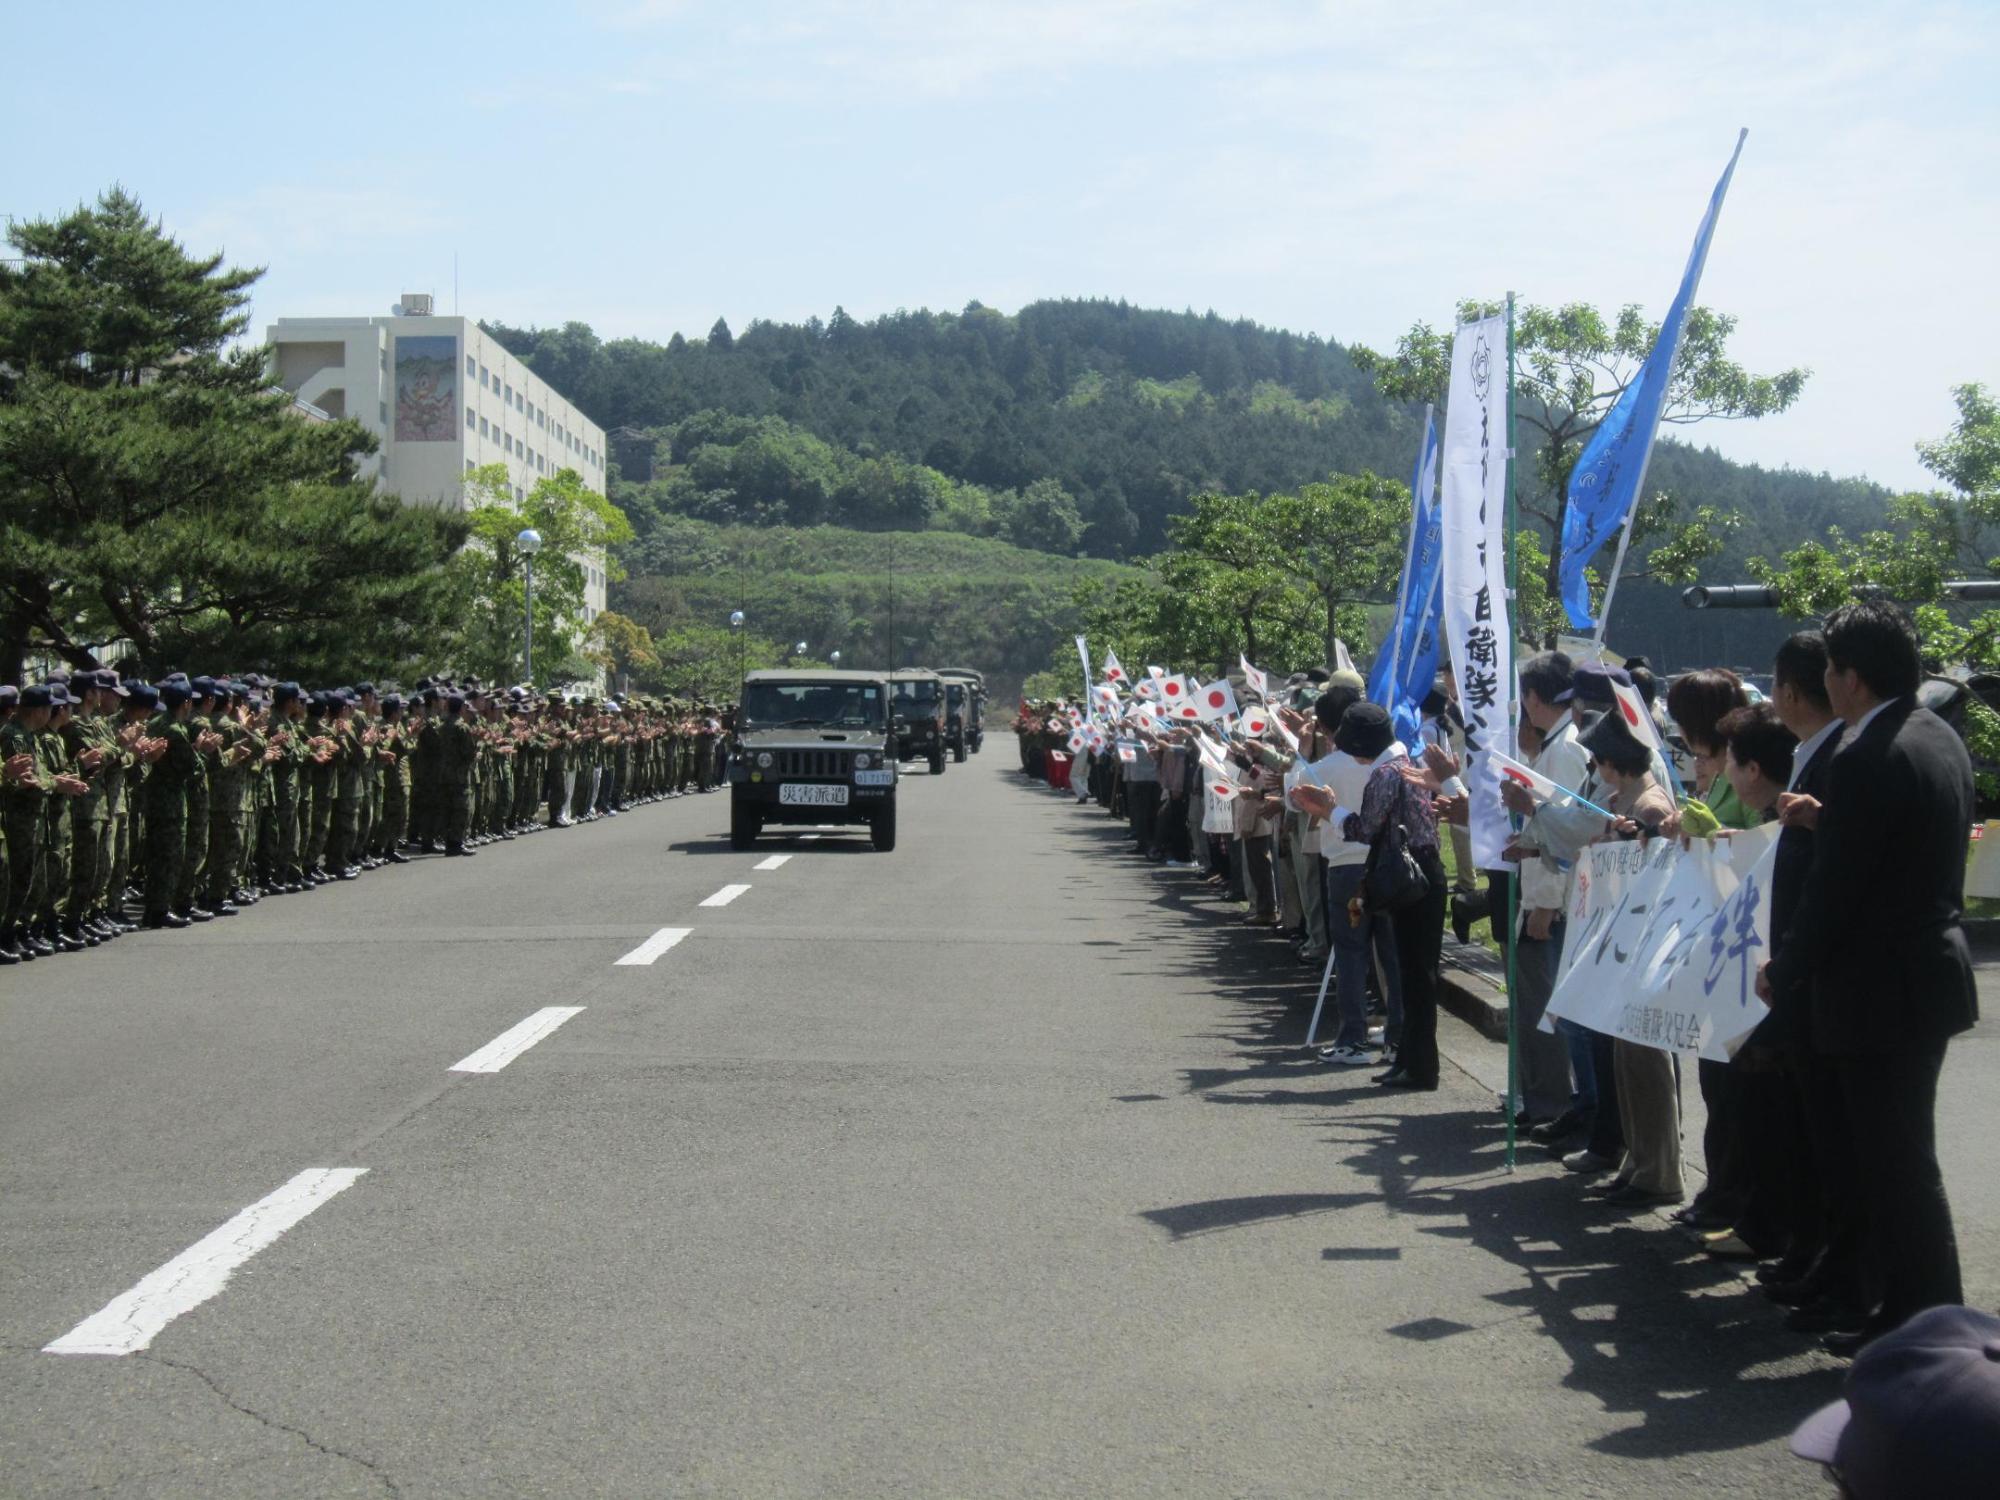 車両が通る道路わきに並ぶ迷彩服の部隊と、その向かいに旗や横断幕を持って並ぶ老若男女の写真